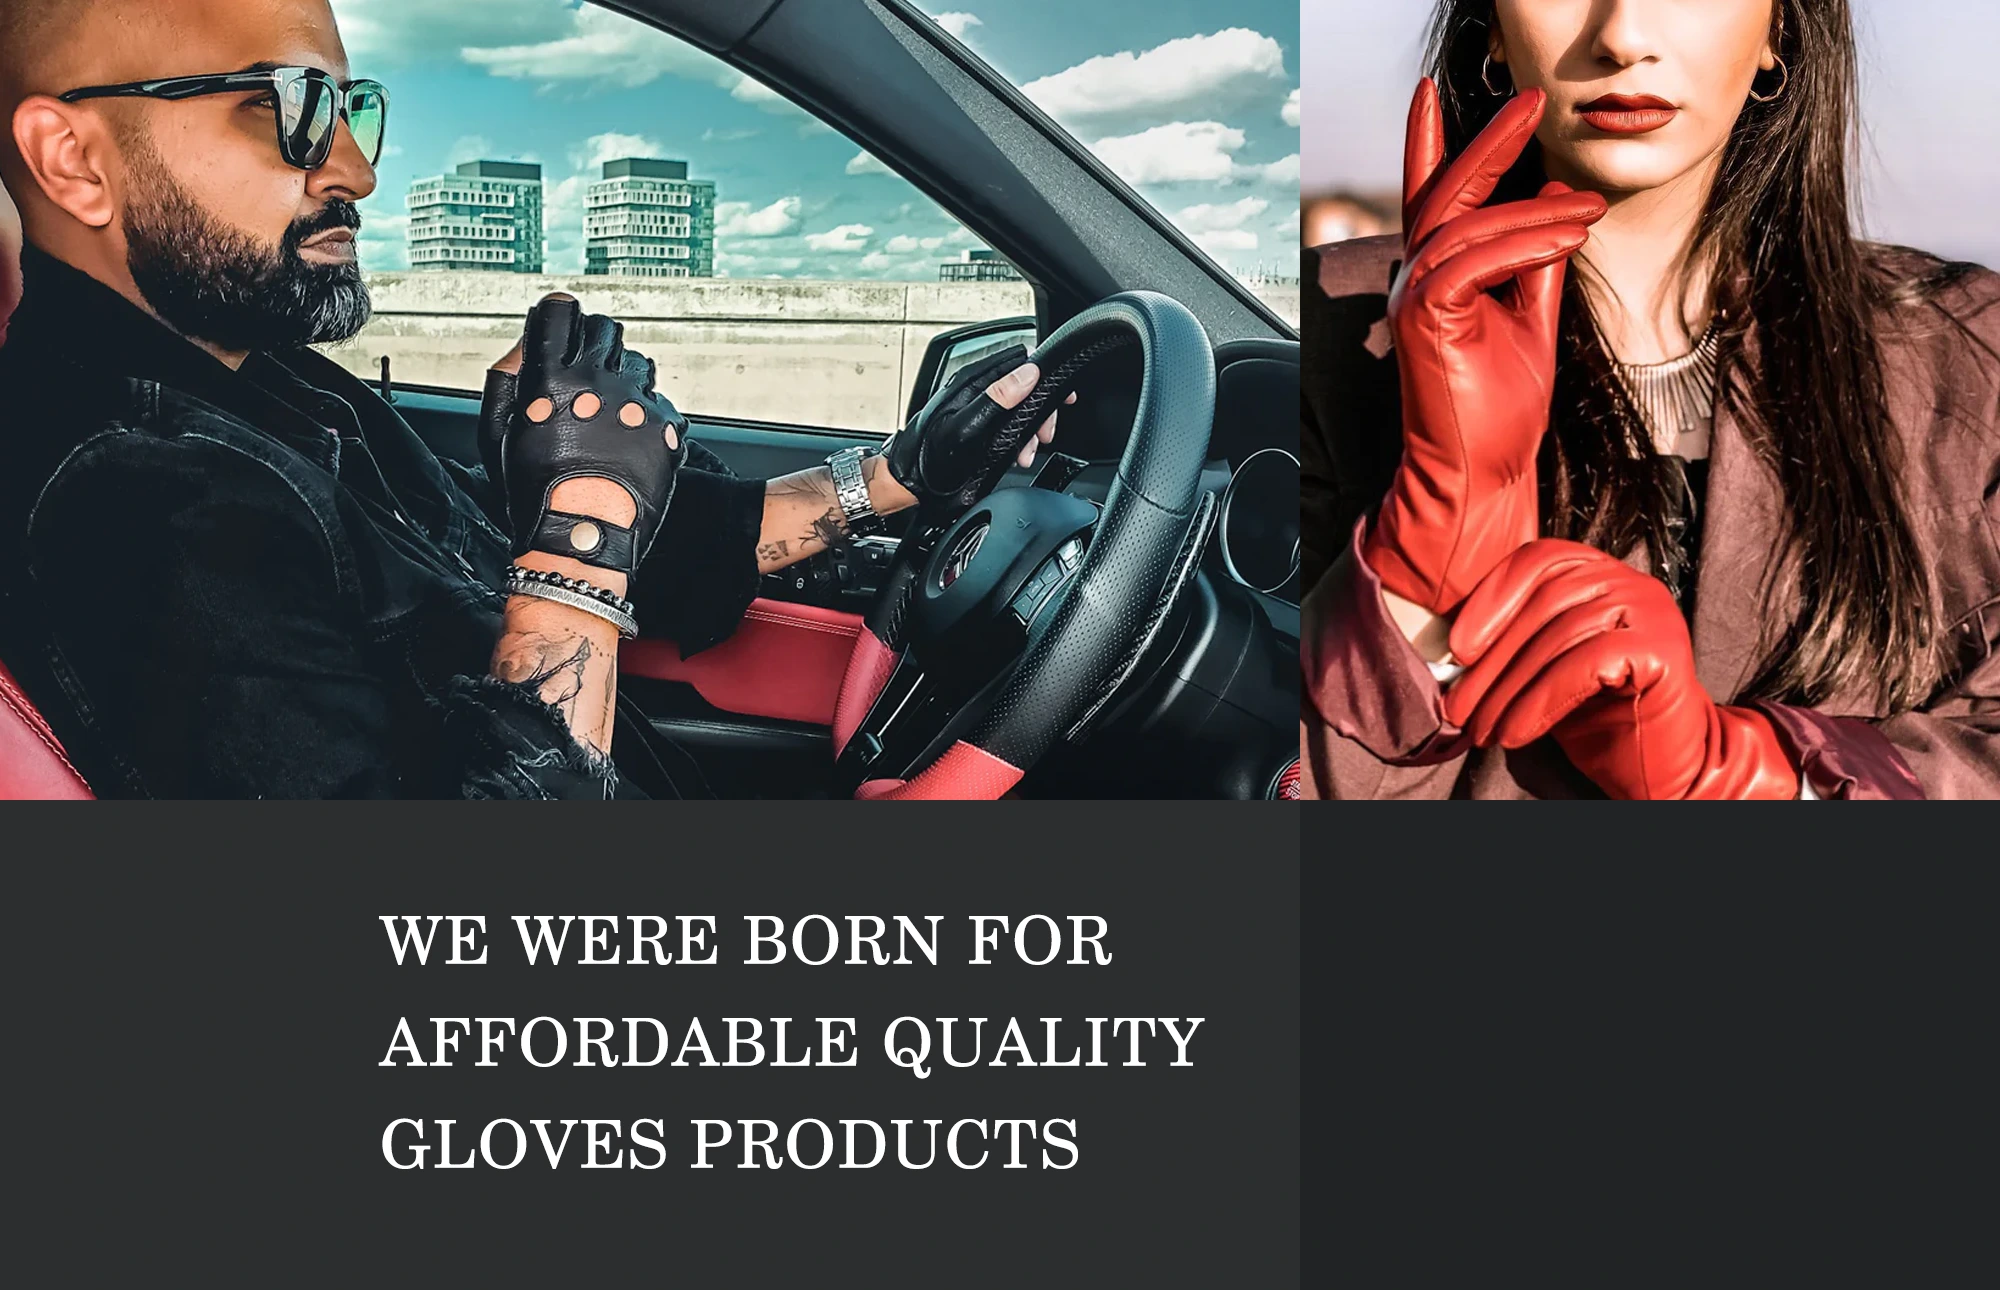 DEX FIT, Dexfit, DEX FIT Gloves, Safety & Comfortable Work Gloves, MUVEEN